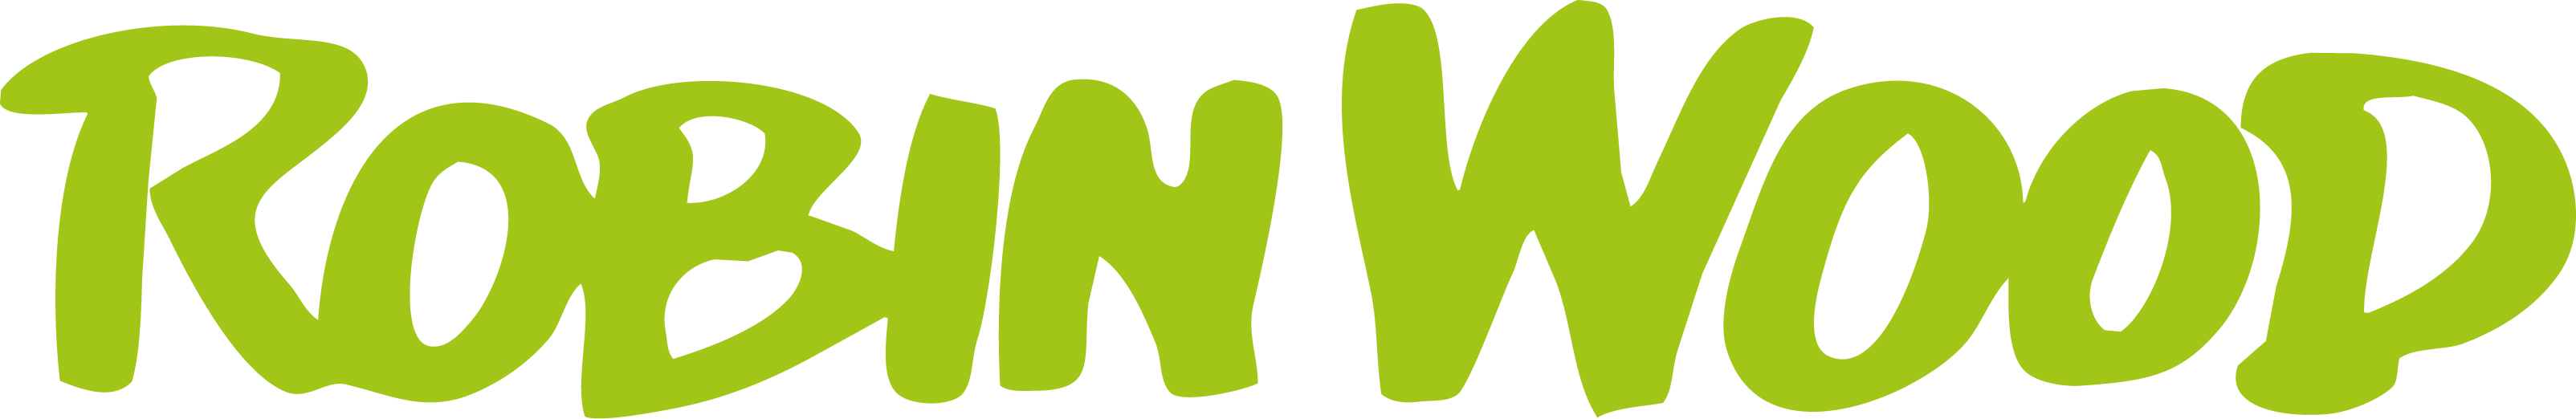 Robin Wood Logo - Robin Wood Logo (3208x522)